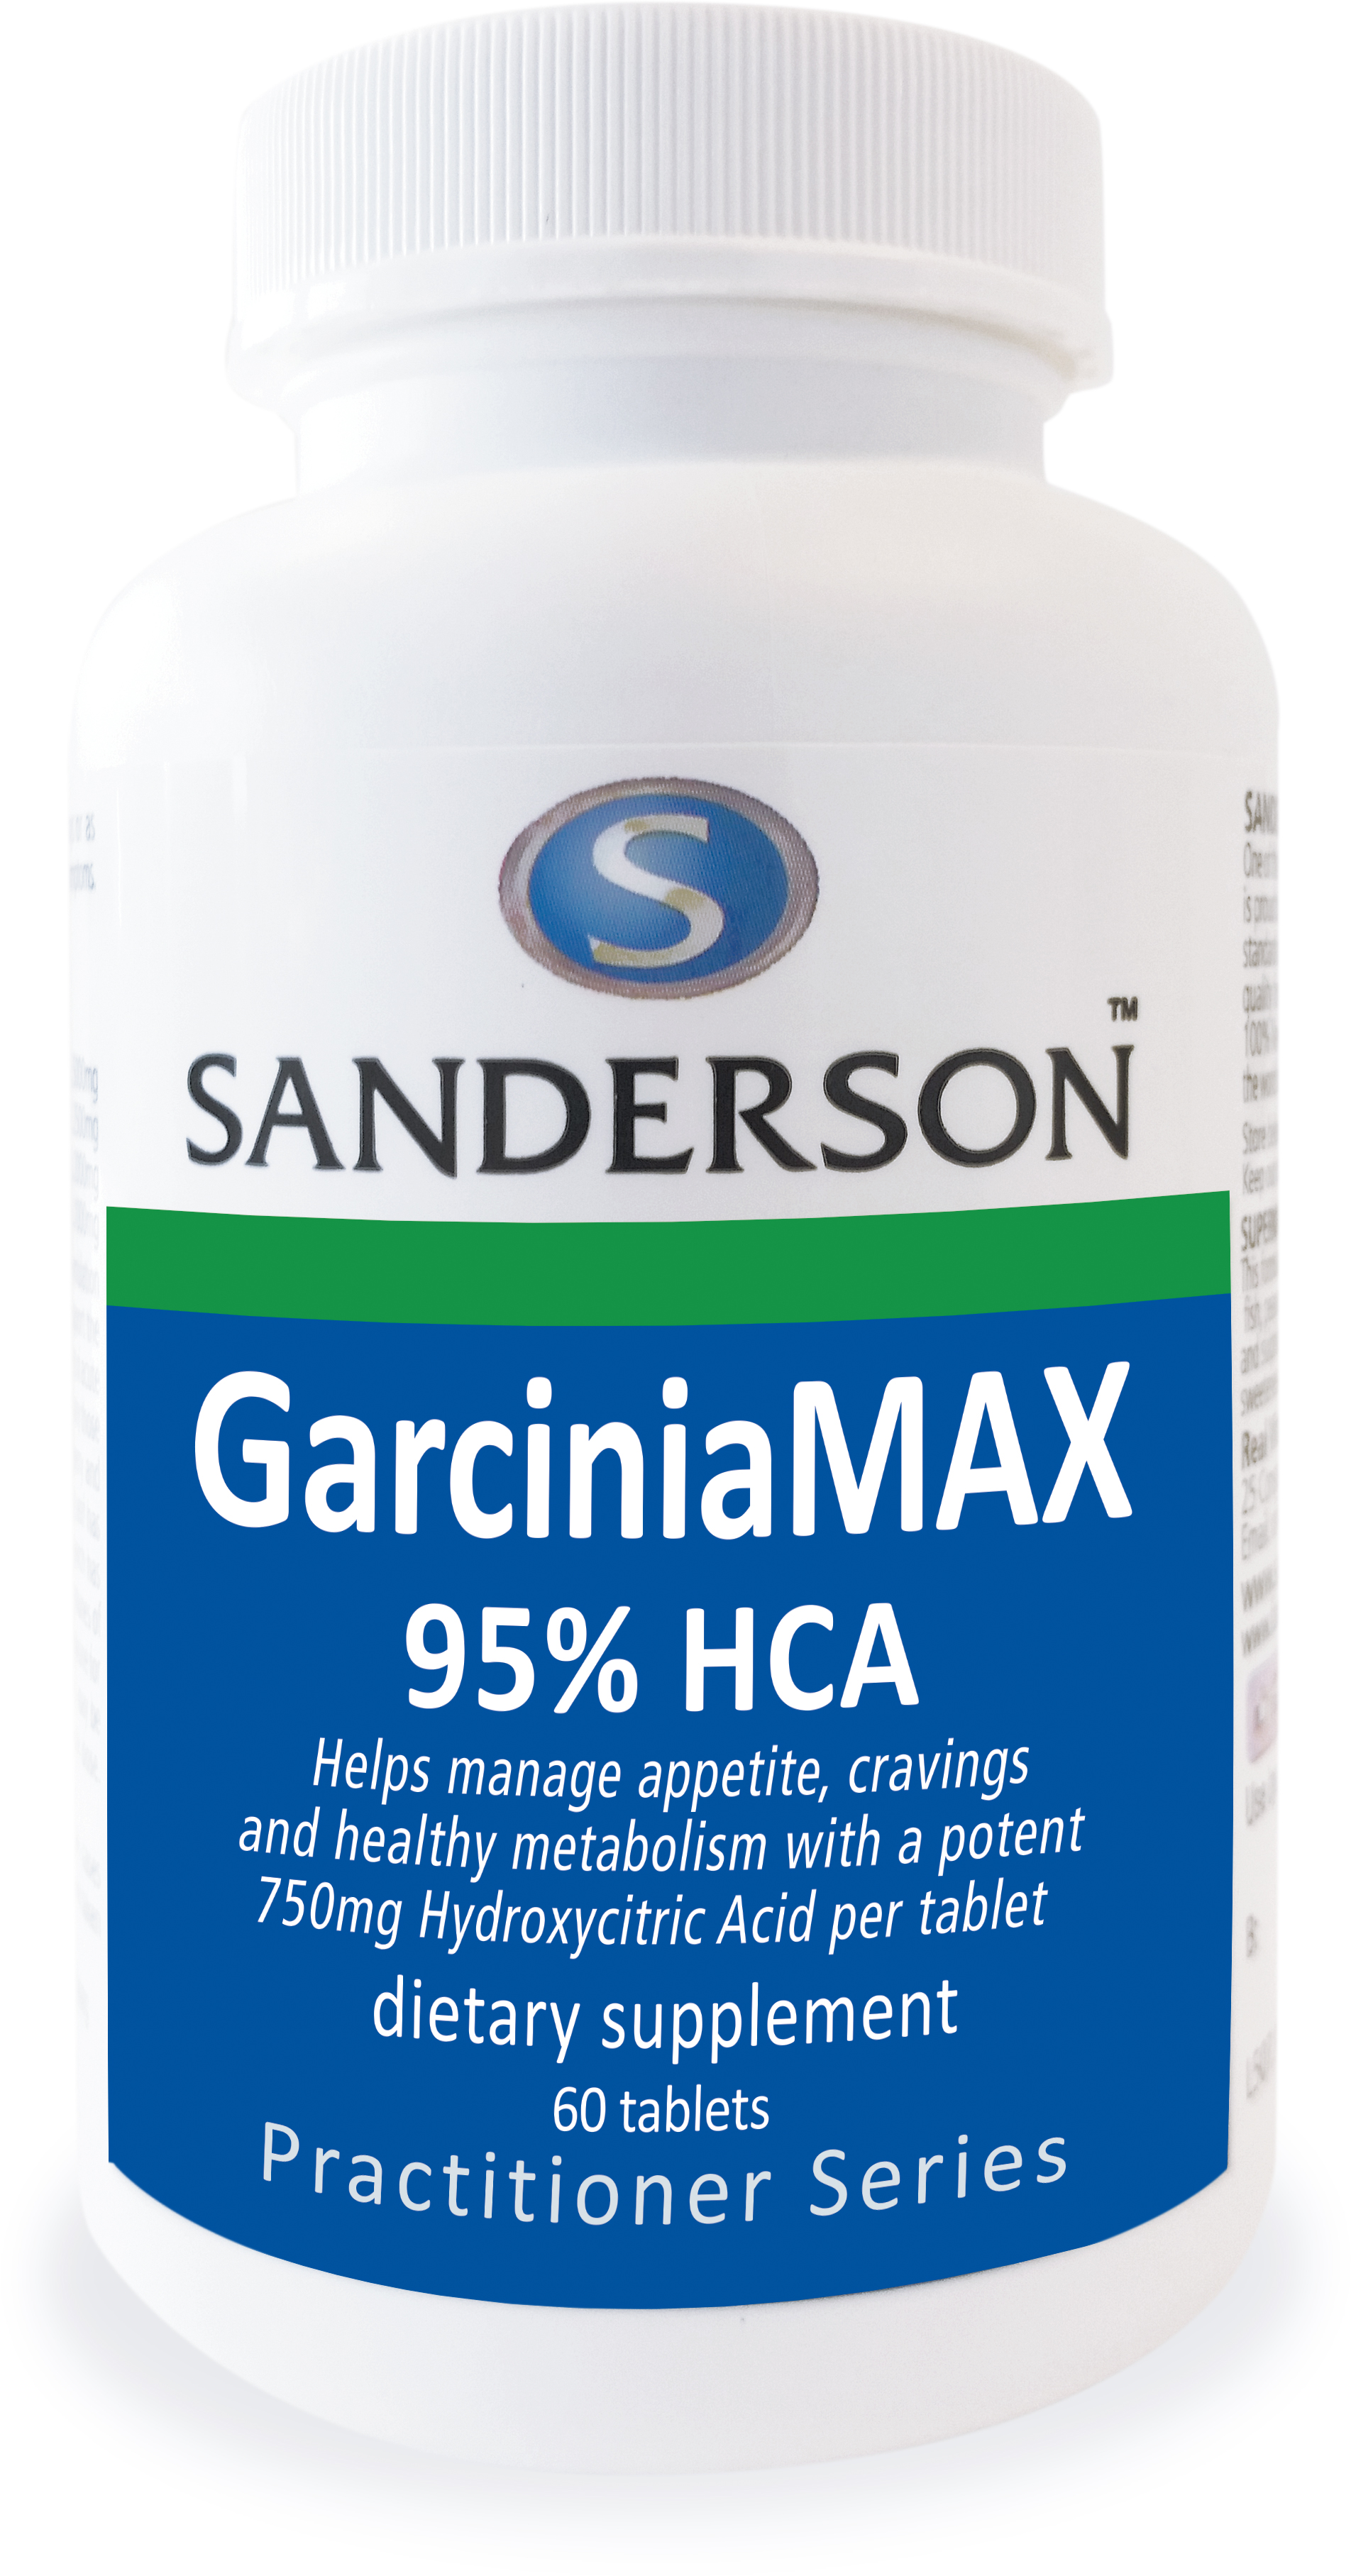 Sanderson GarciniaMAX 95% HCA 60 Tablets